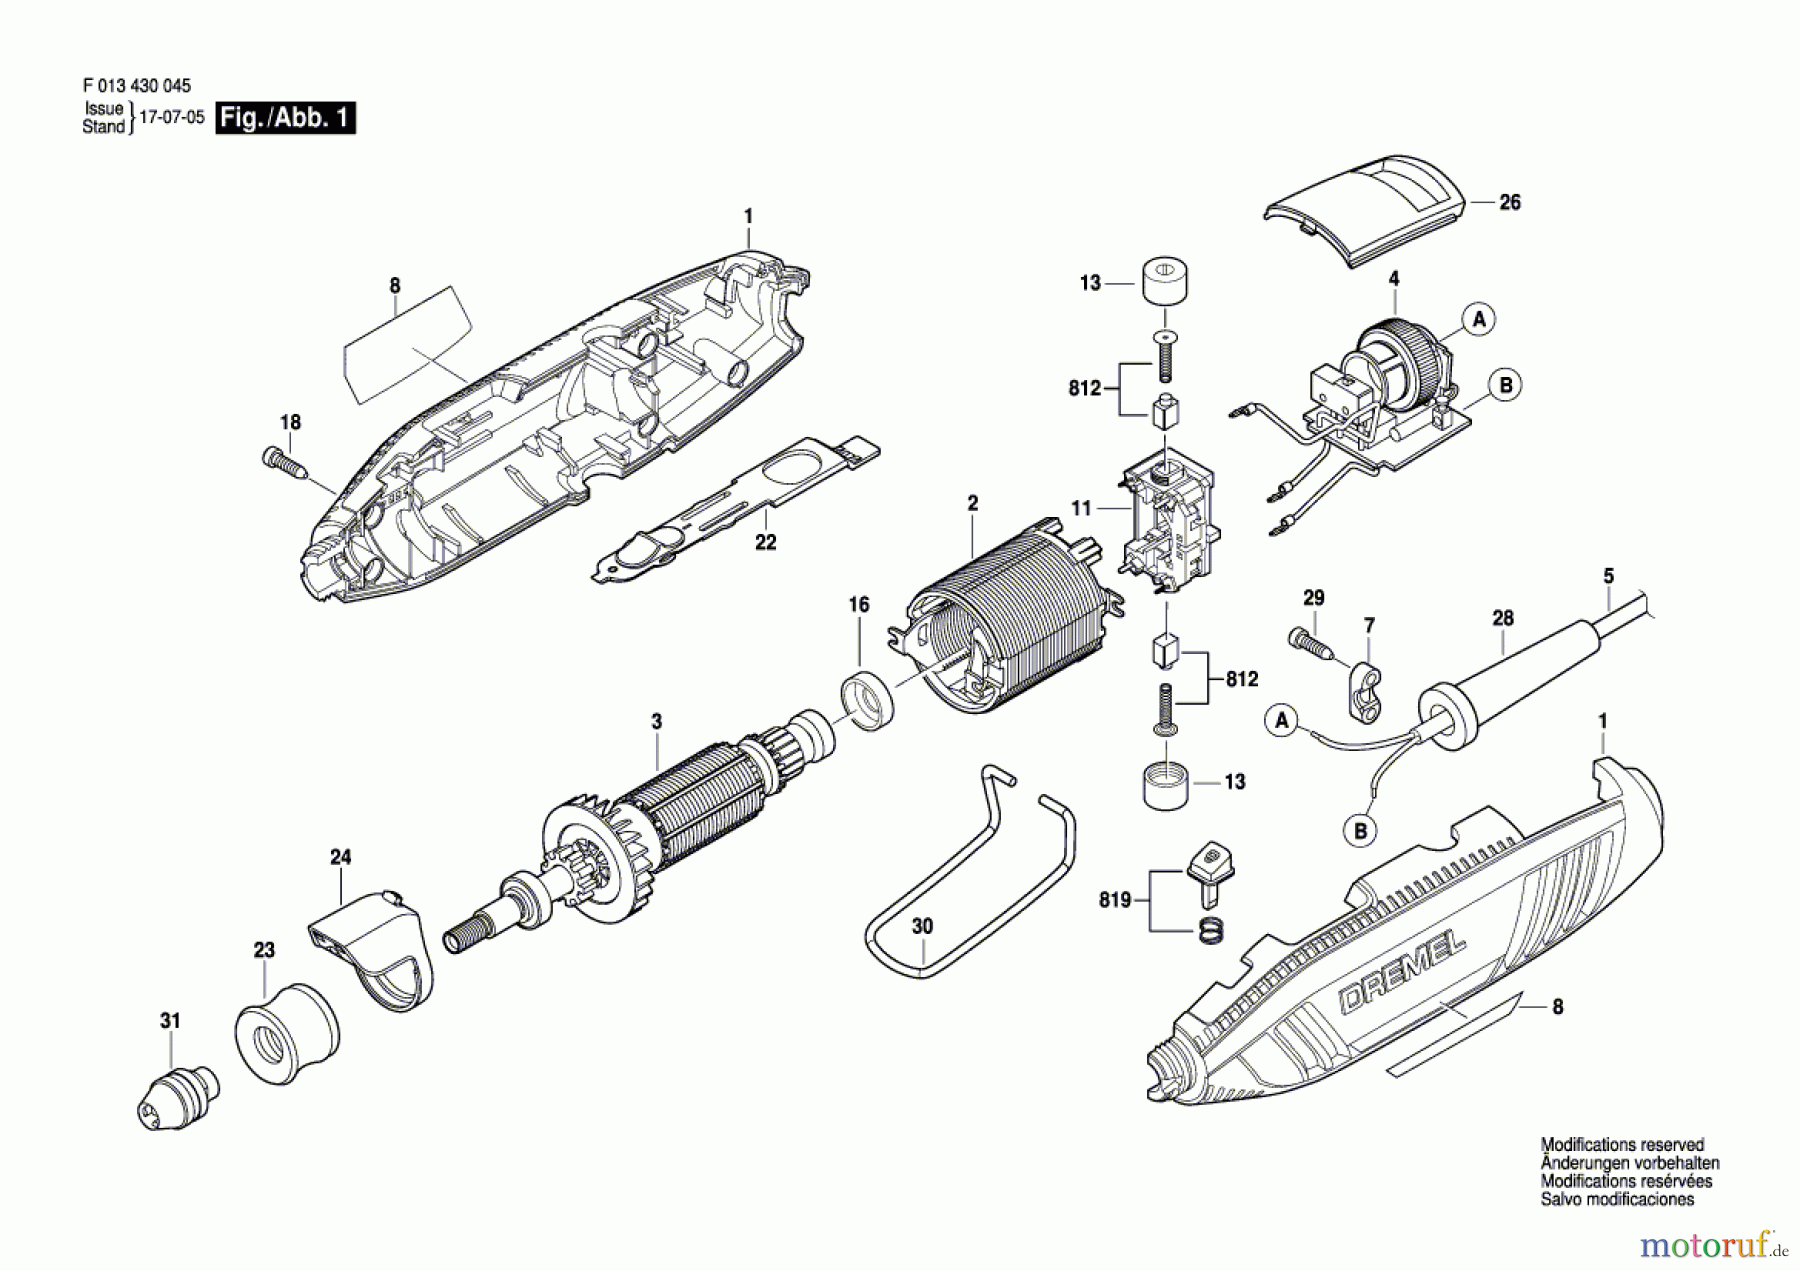  Bosch Werkzeug Drehwerkzeug 4300 Seite 1